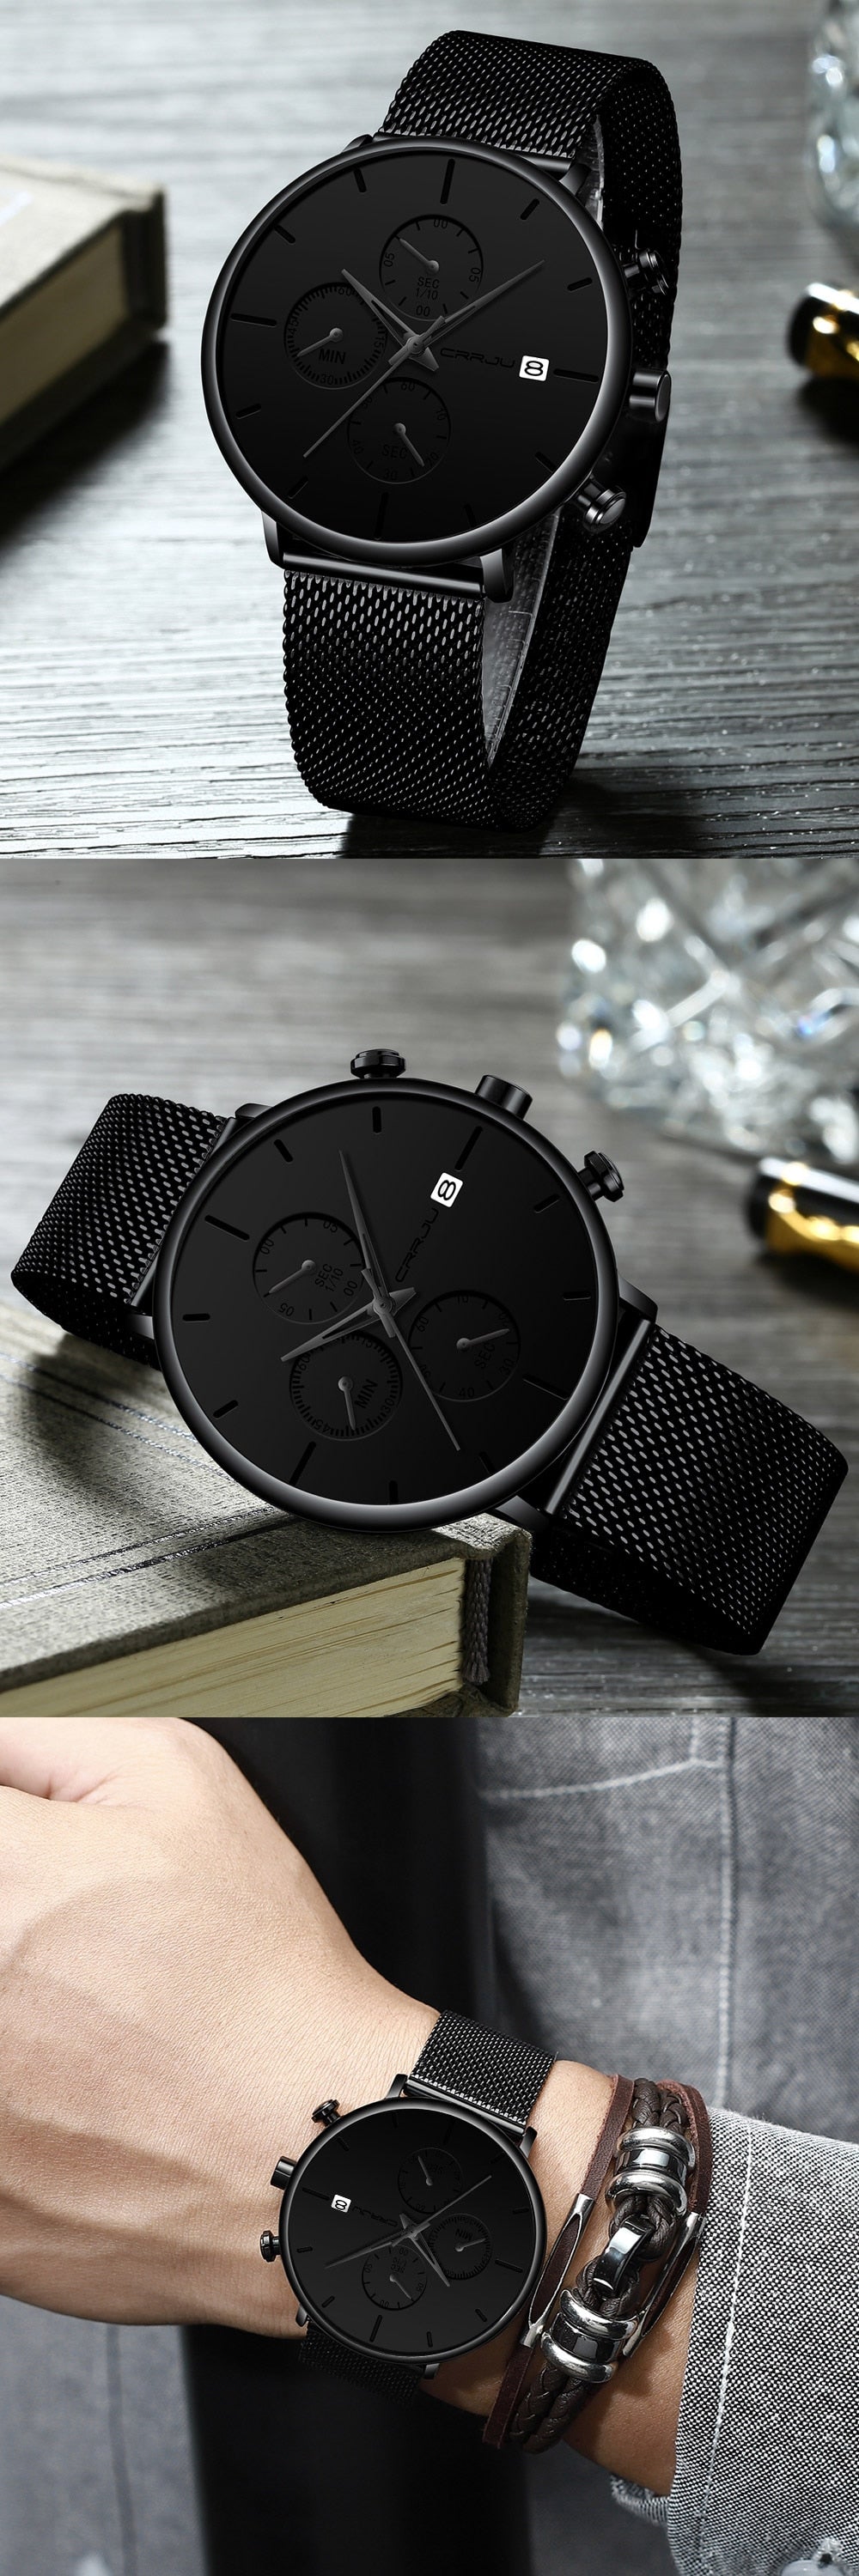 3 Black Crrju Model 2268 Minimalist Quartz Watch Slim Steel Mesh Strap from fiveto.co.uk